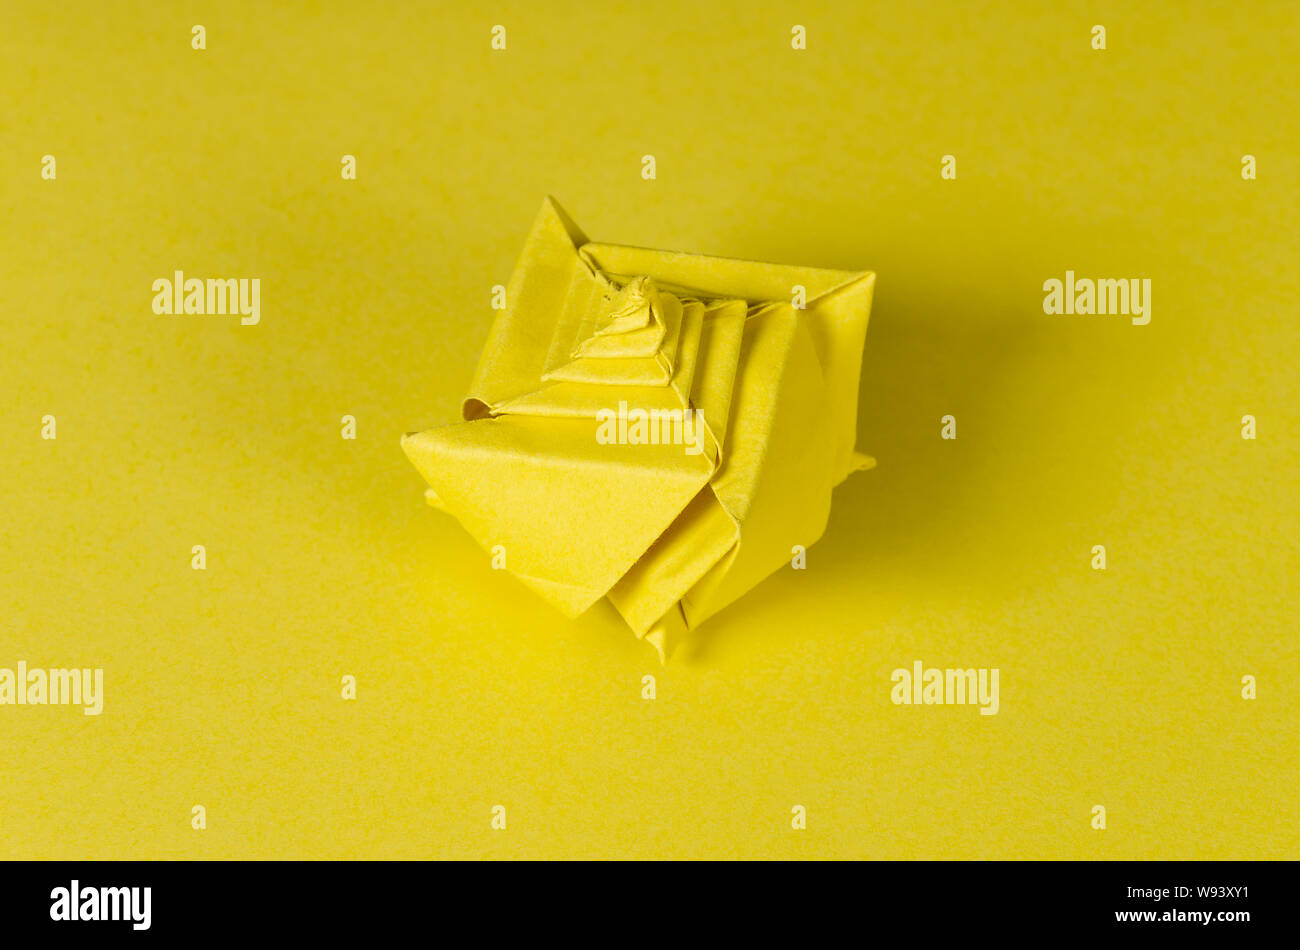 Seashell origami jaune sur fond jaune. L'art japonais du pliage de papier. Feuille de papier carré plat transférés dans une sculpture. Banque D'Images